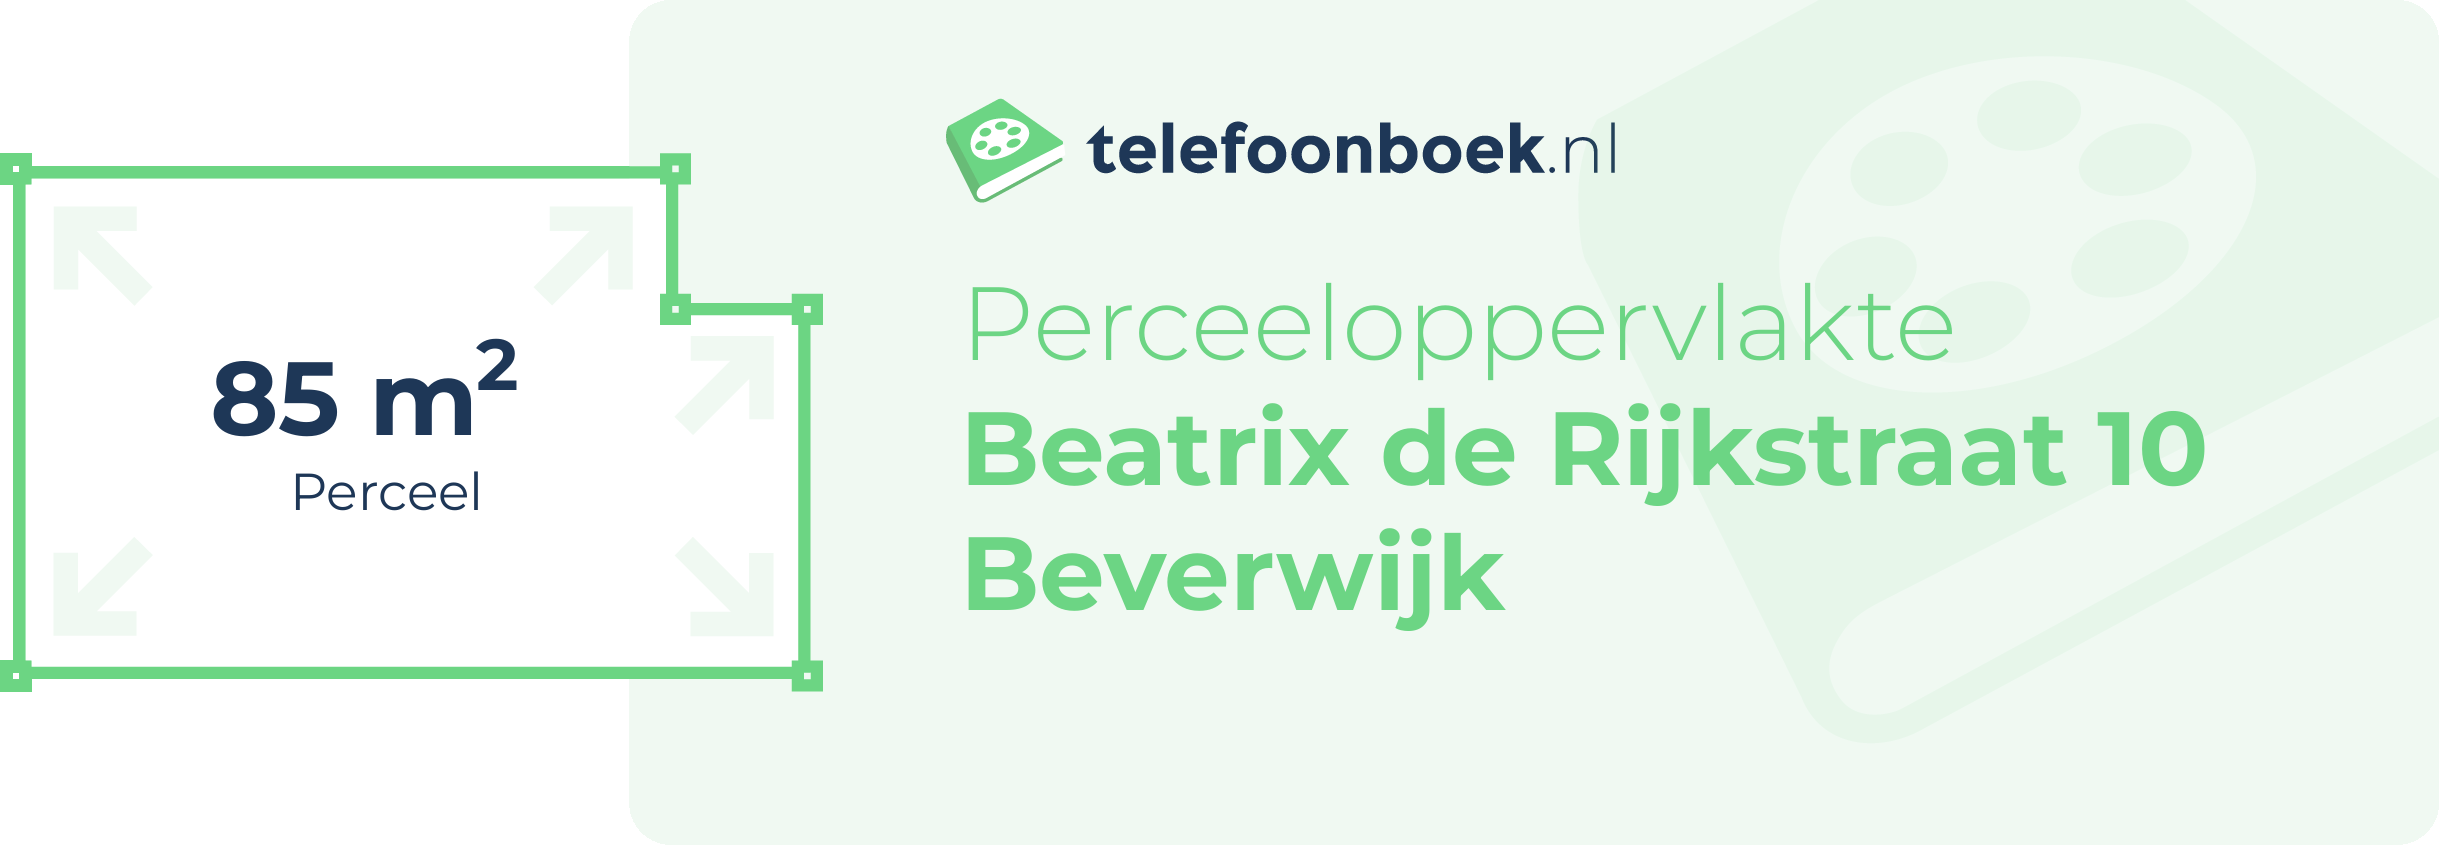 Perceeloppervlakte Beatrix De Rijkstraat 10 Beverwijk